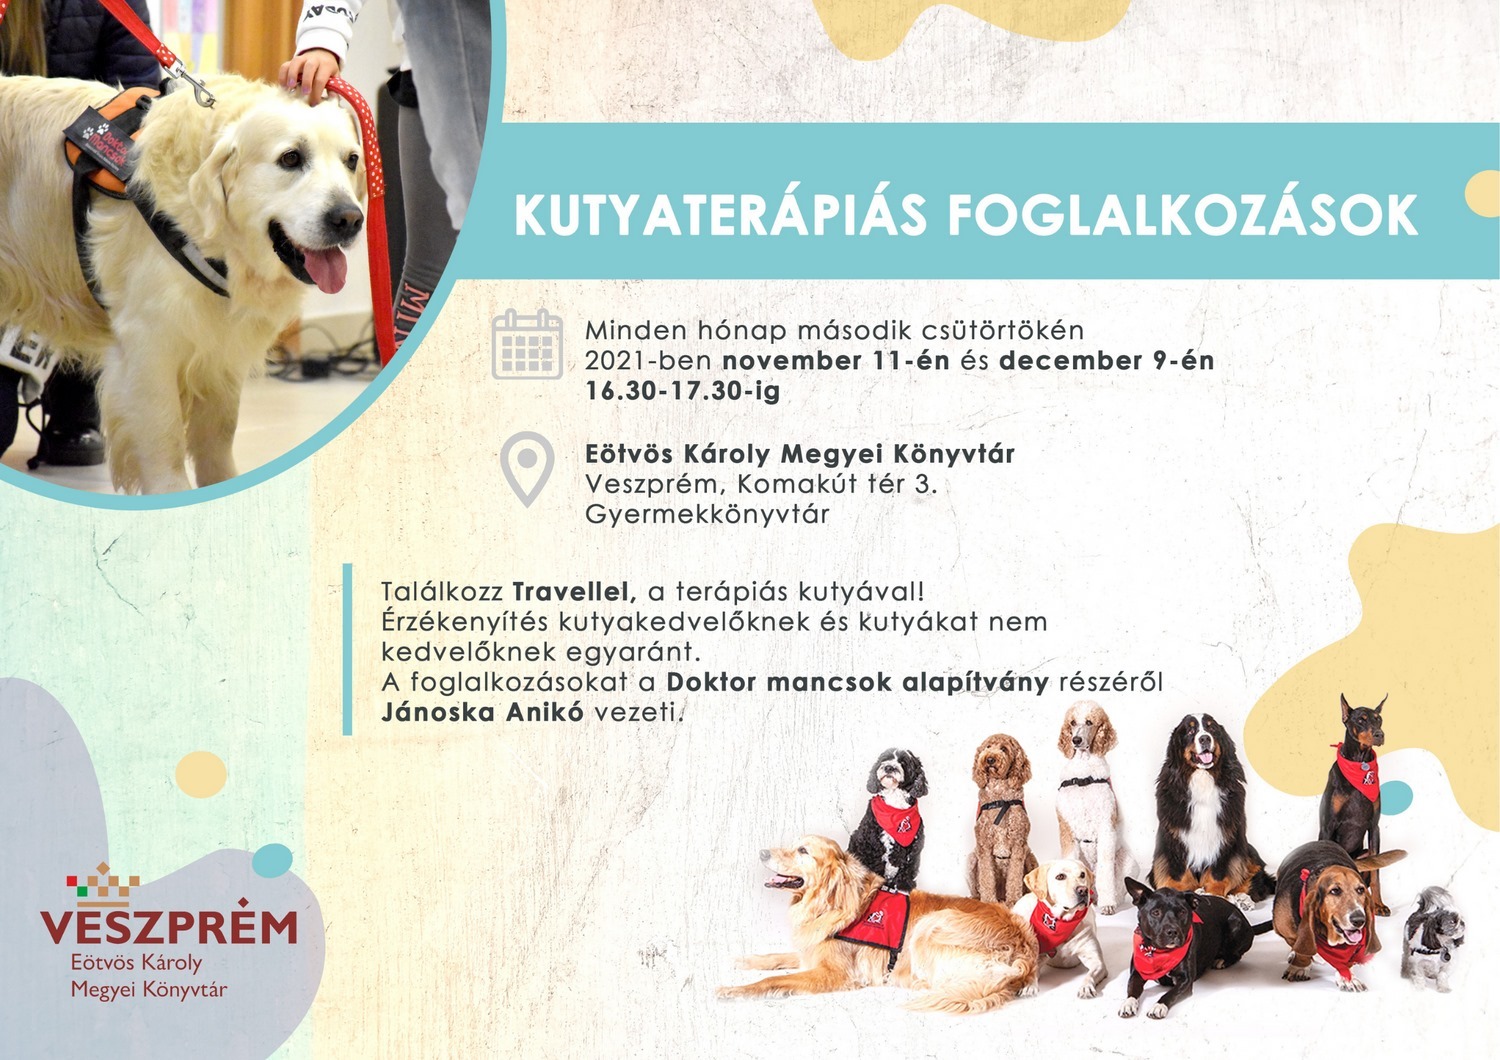 Kutyaterápiás foglalkozások a kutyabarát Eötvös Károly Megyei Könyvtárban